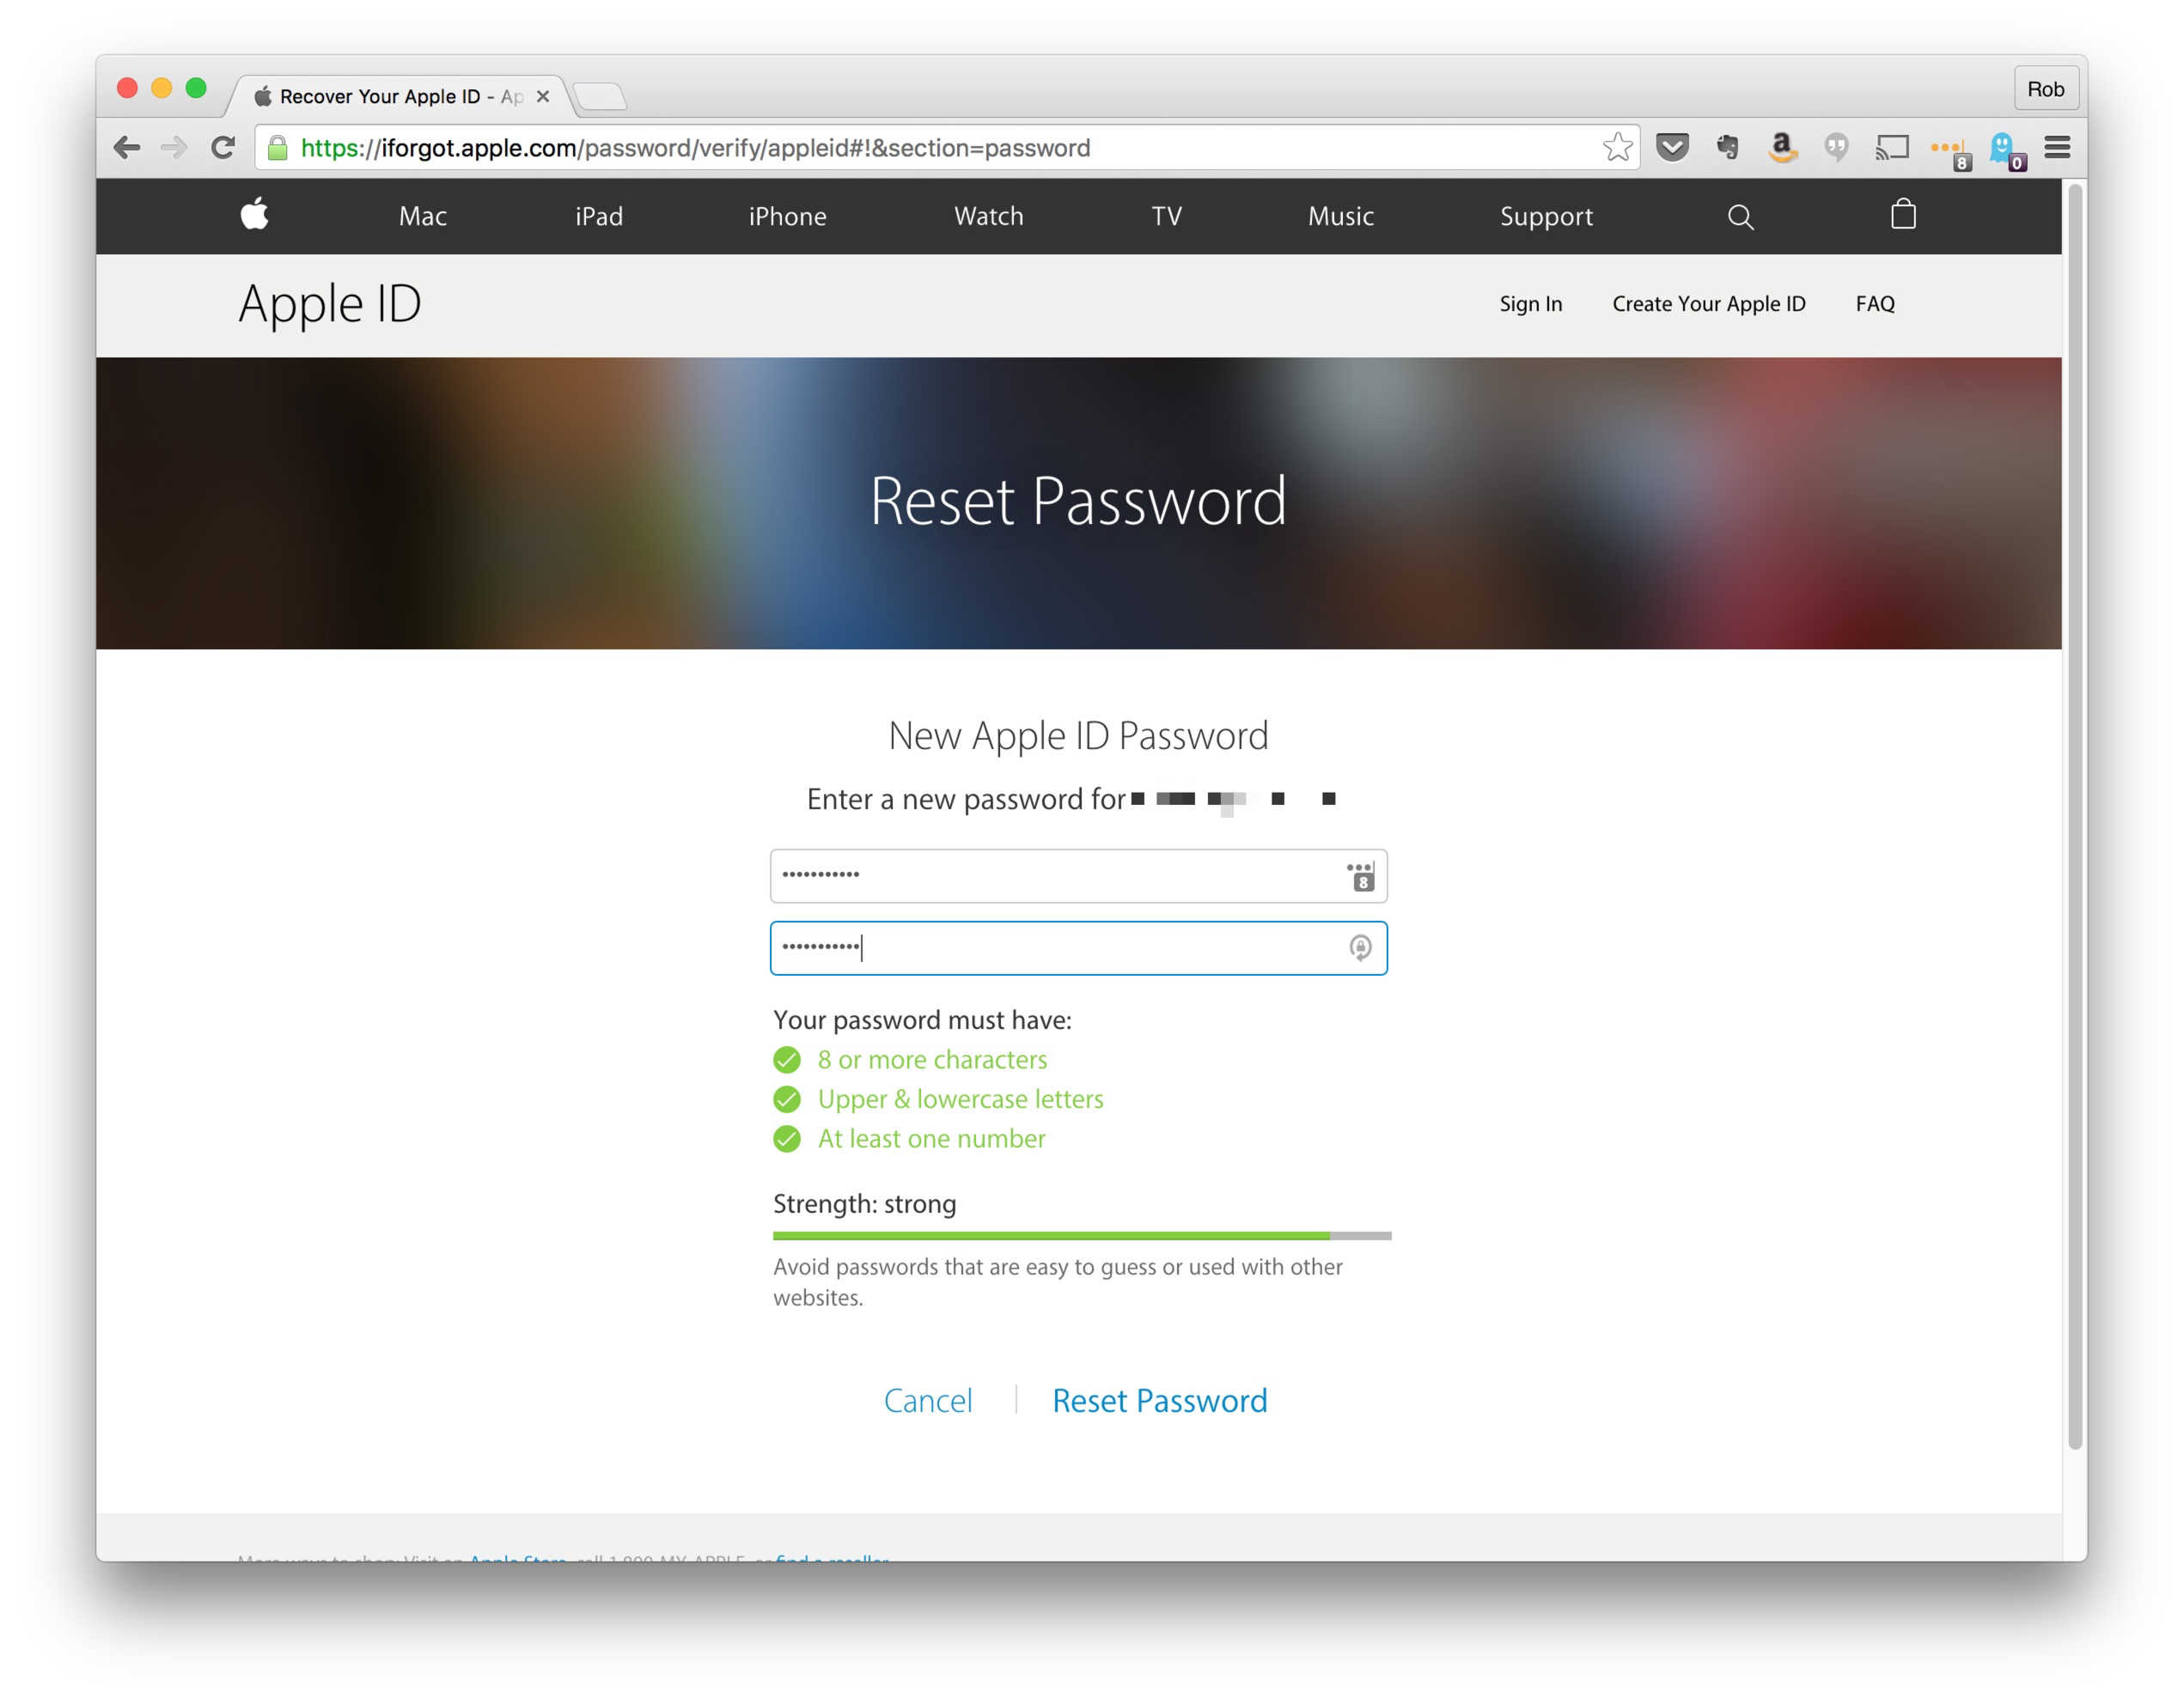 apple id password